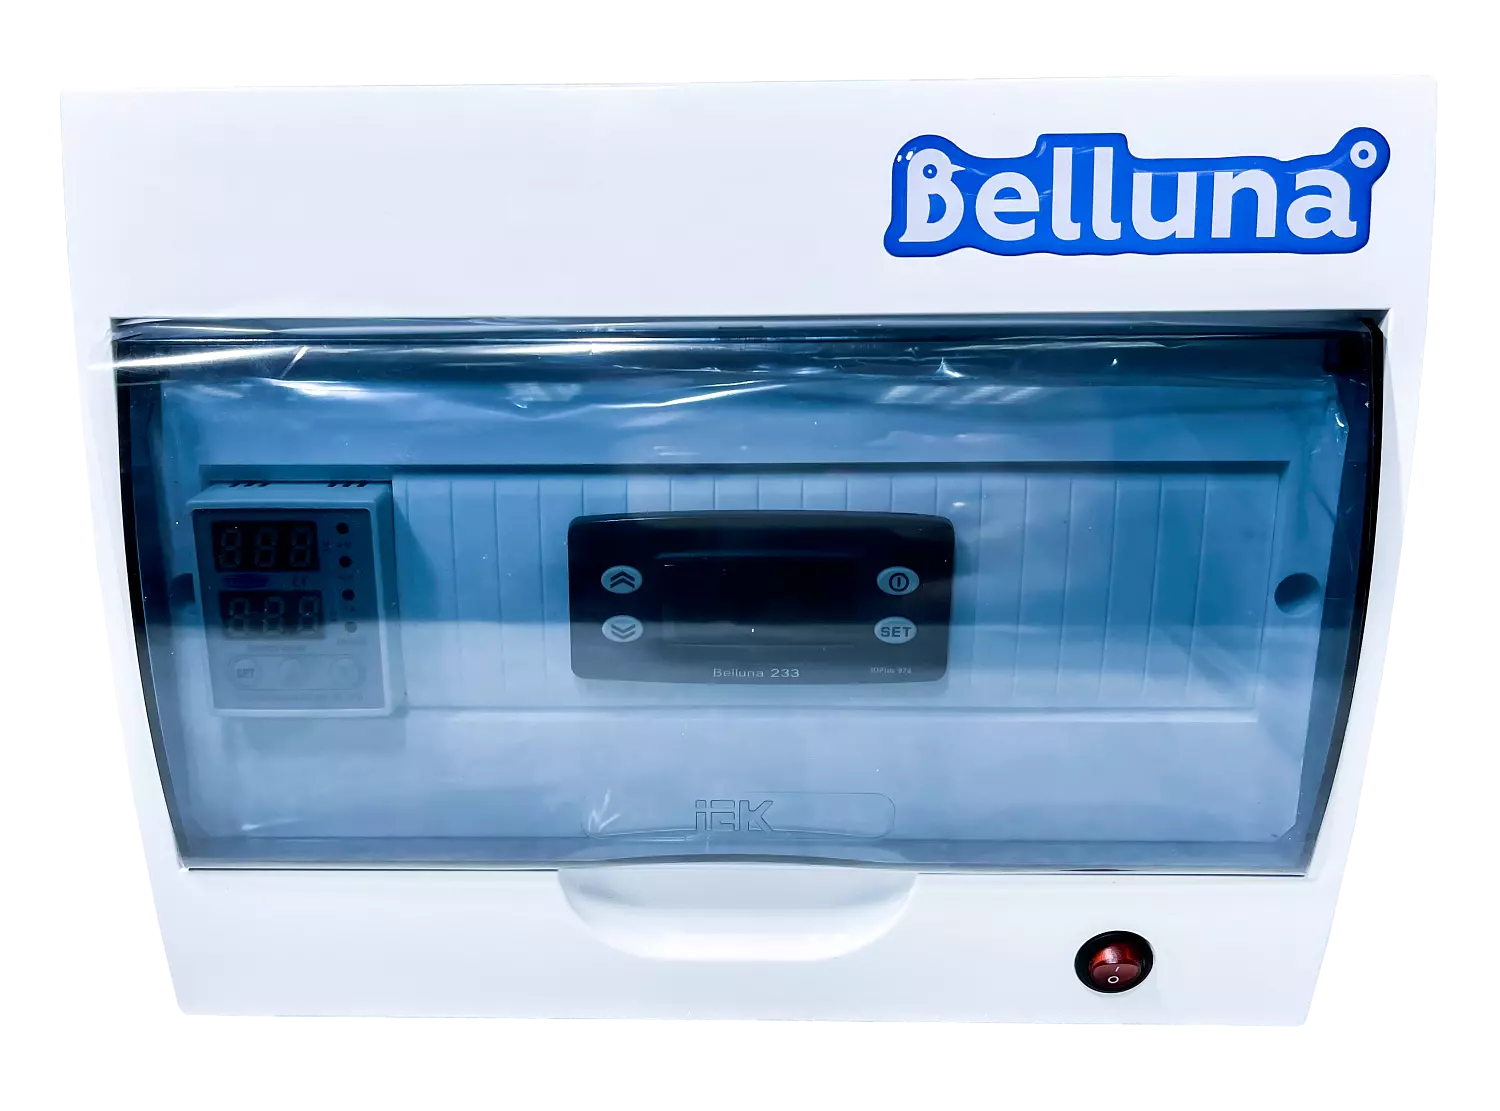 сплит-система Belluna iP-5 Красноярск